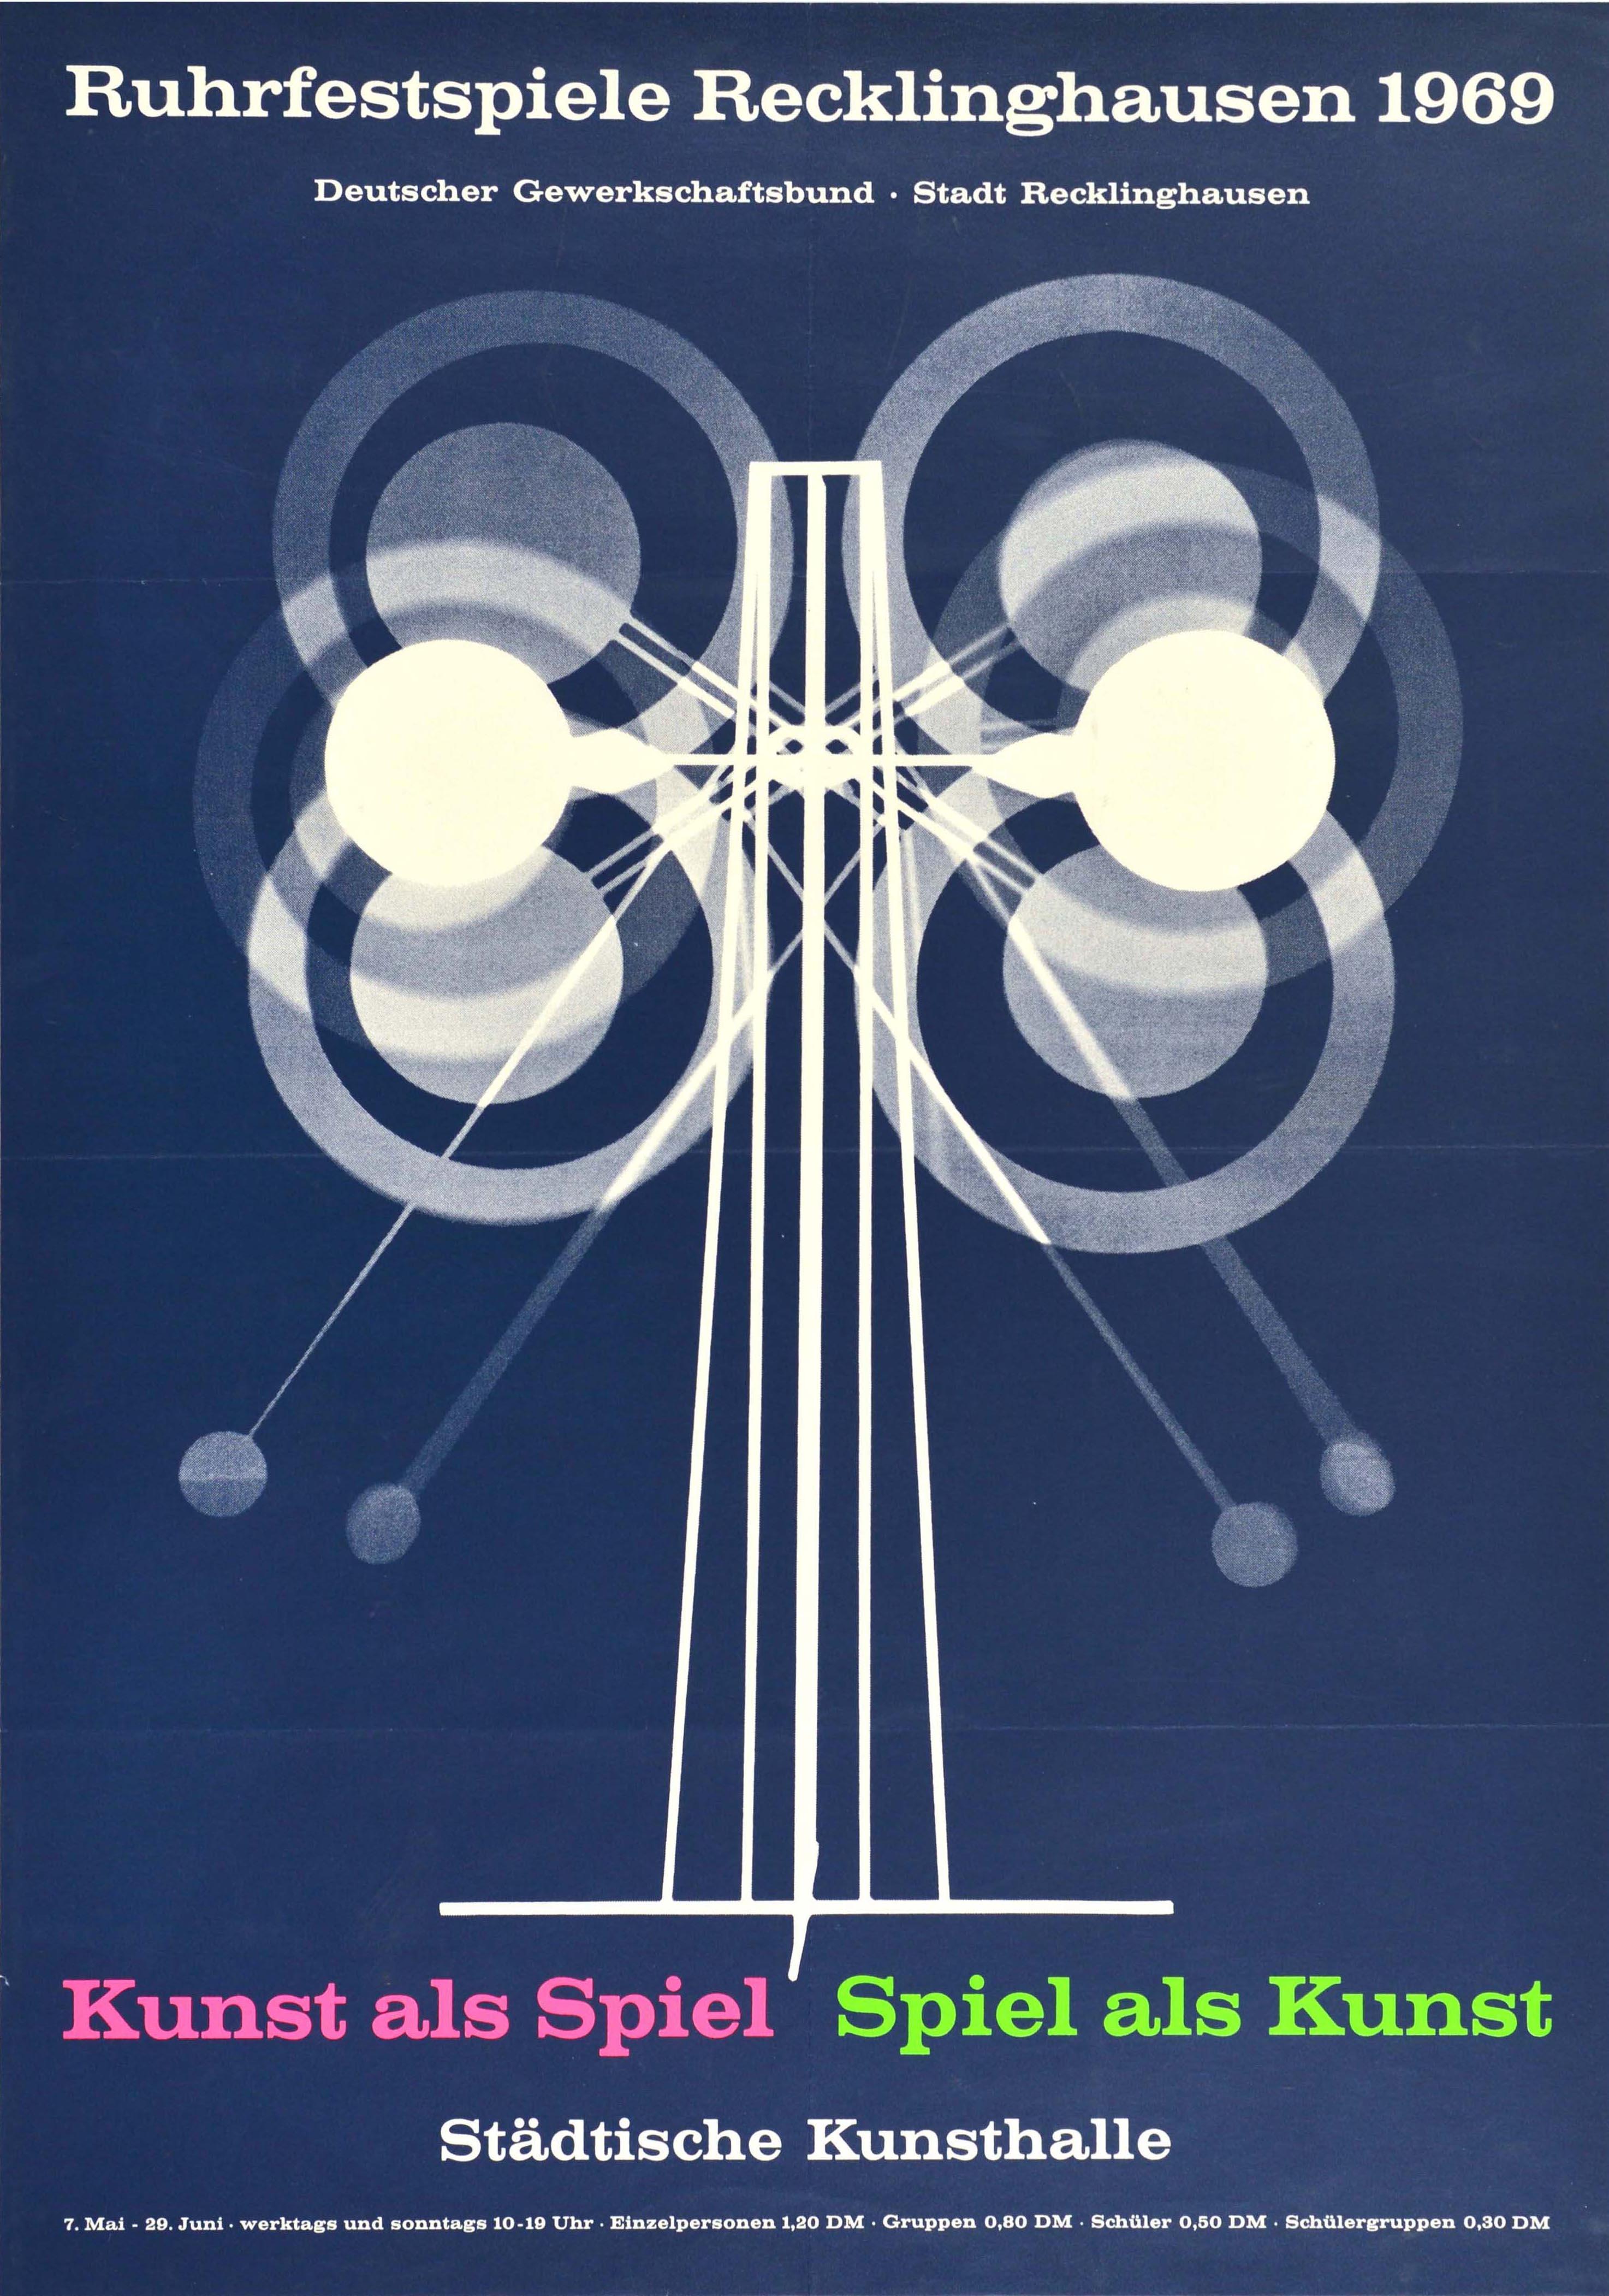 Unknown Print – Original Vintage-Poster, Theaterfestival, Ruhr Festival, Kunstausstellung, Modernismus